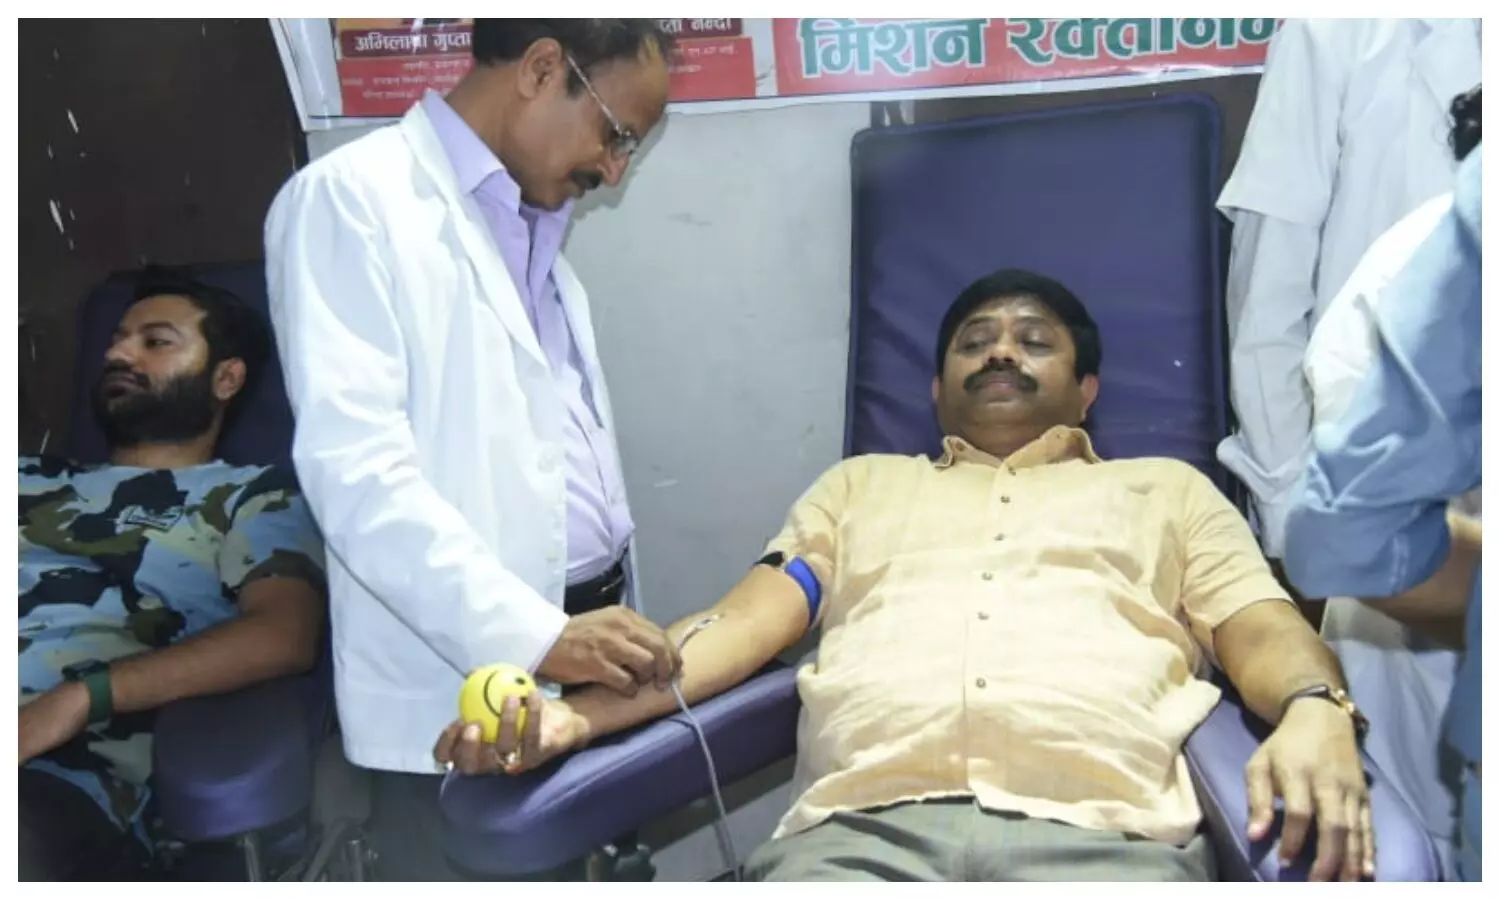 Minister Nandi donating blood